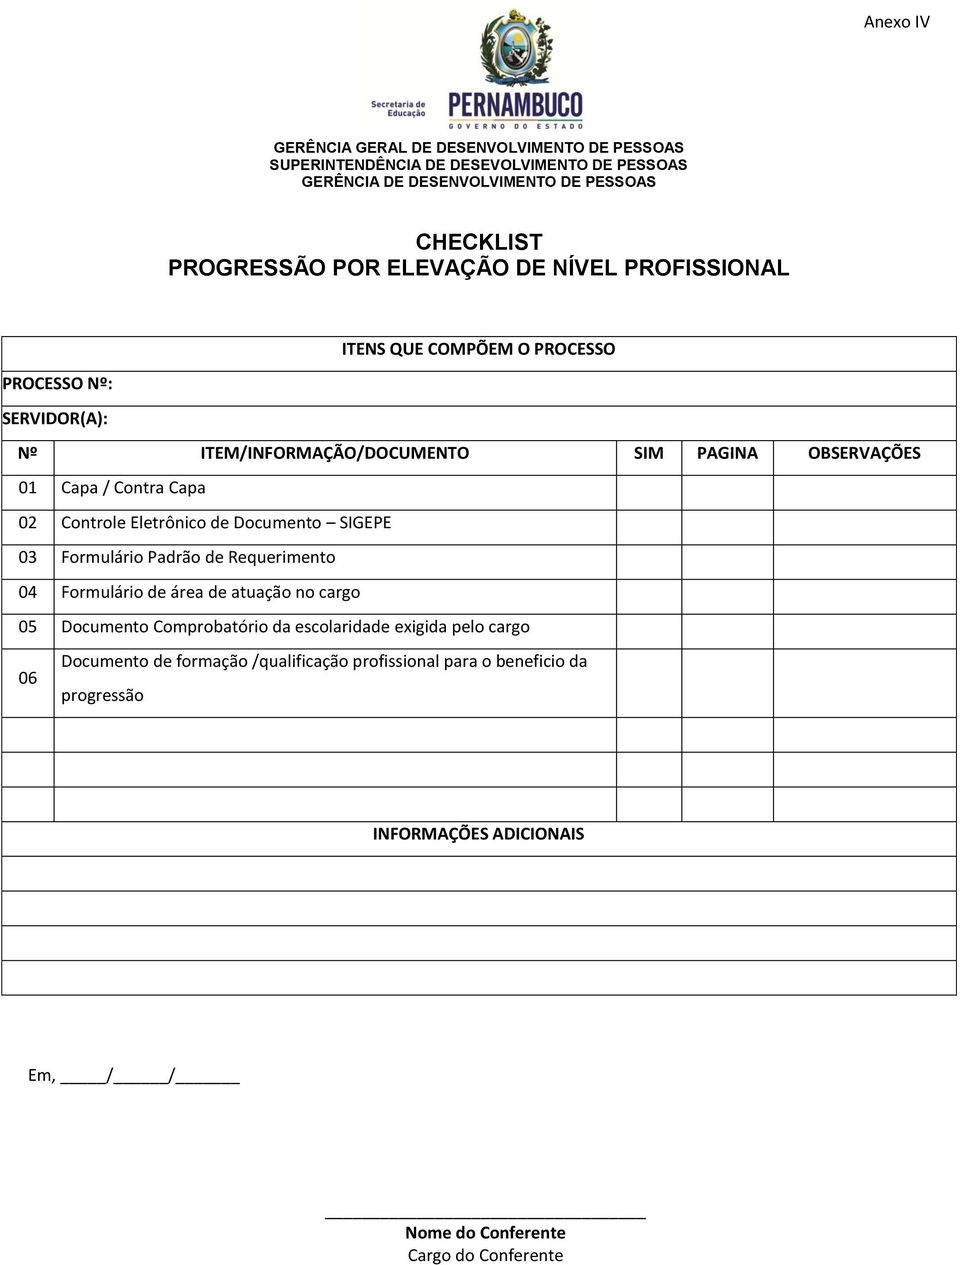 03 Formulário Padrão de Requerimento 04 Formulário de área de atuação no cargo 05 Documento Comprobatório da escolaridade exigida pelo cargo 06